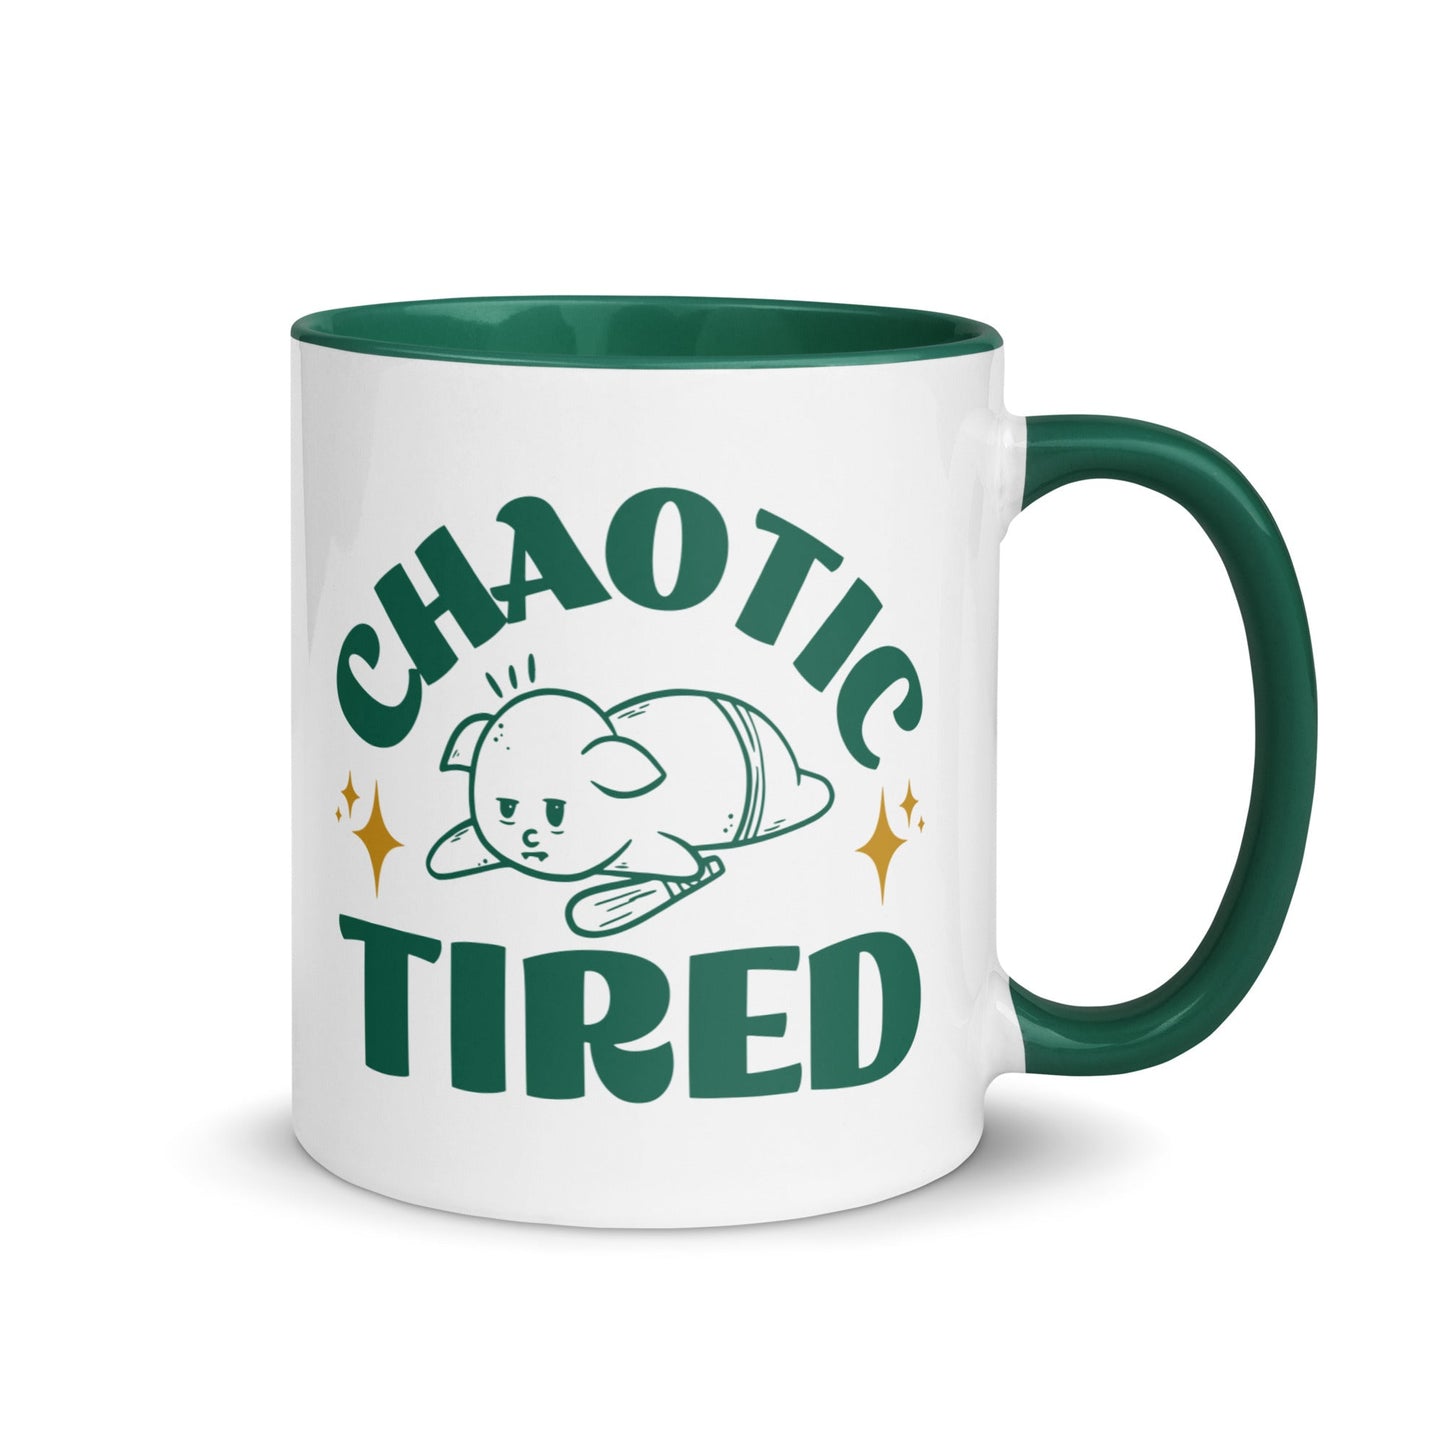 Chaotic Tired Mug - Funny Coffee Mug for Tired Goblins Mug Dark green / 11 oz